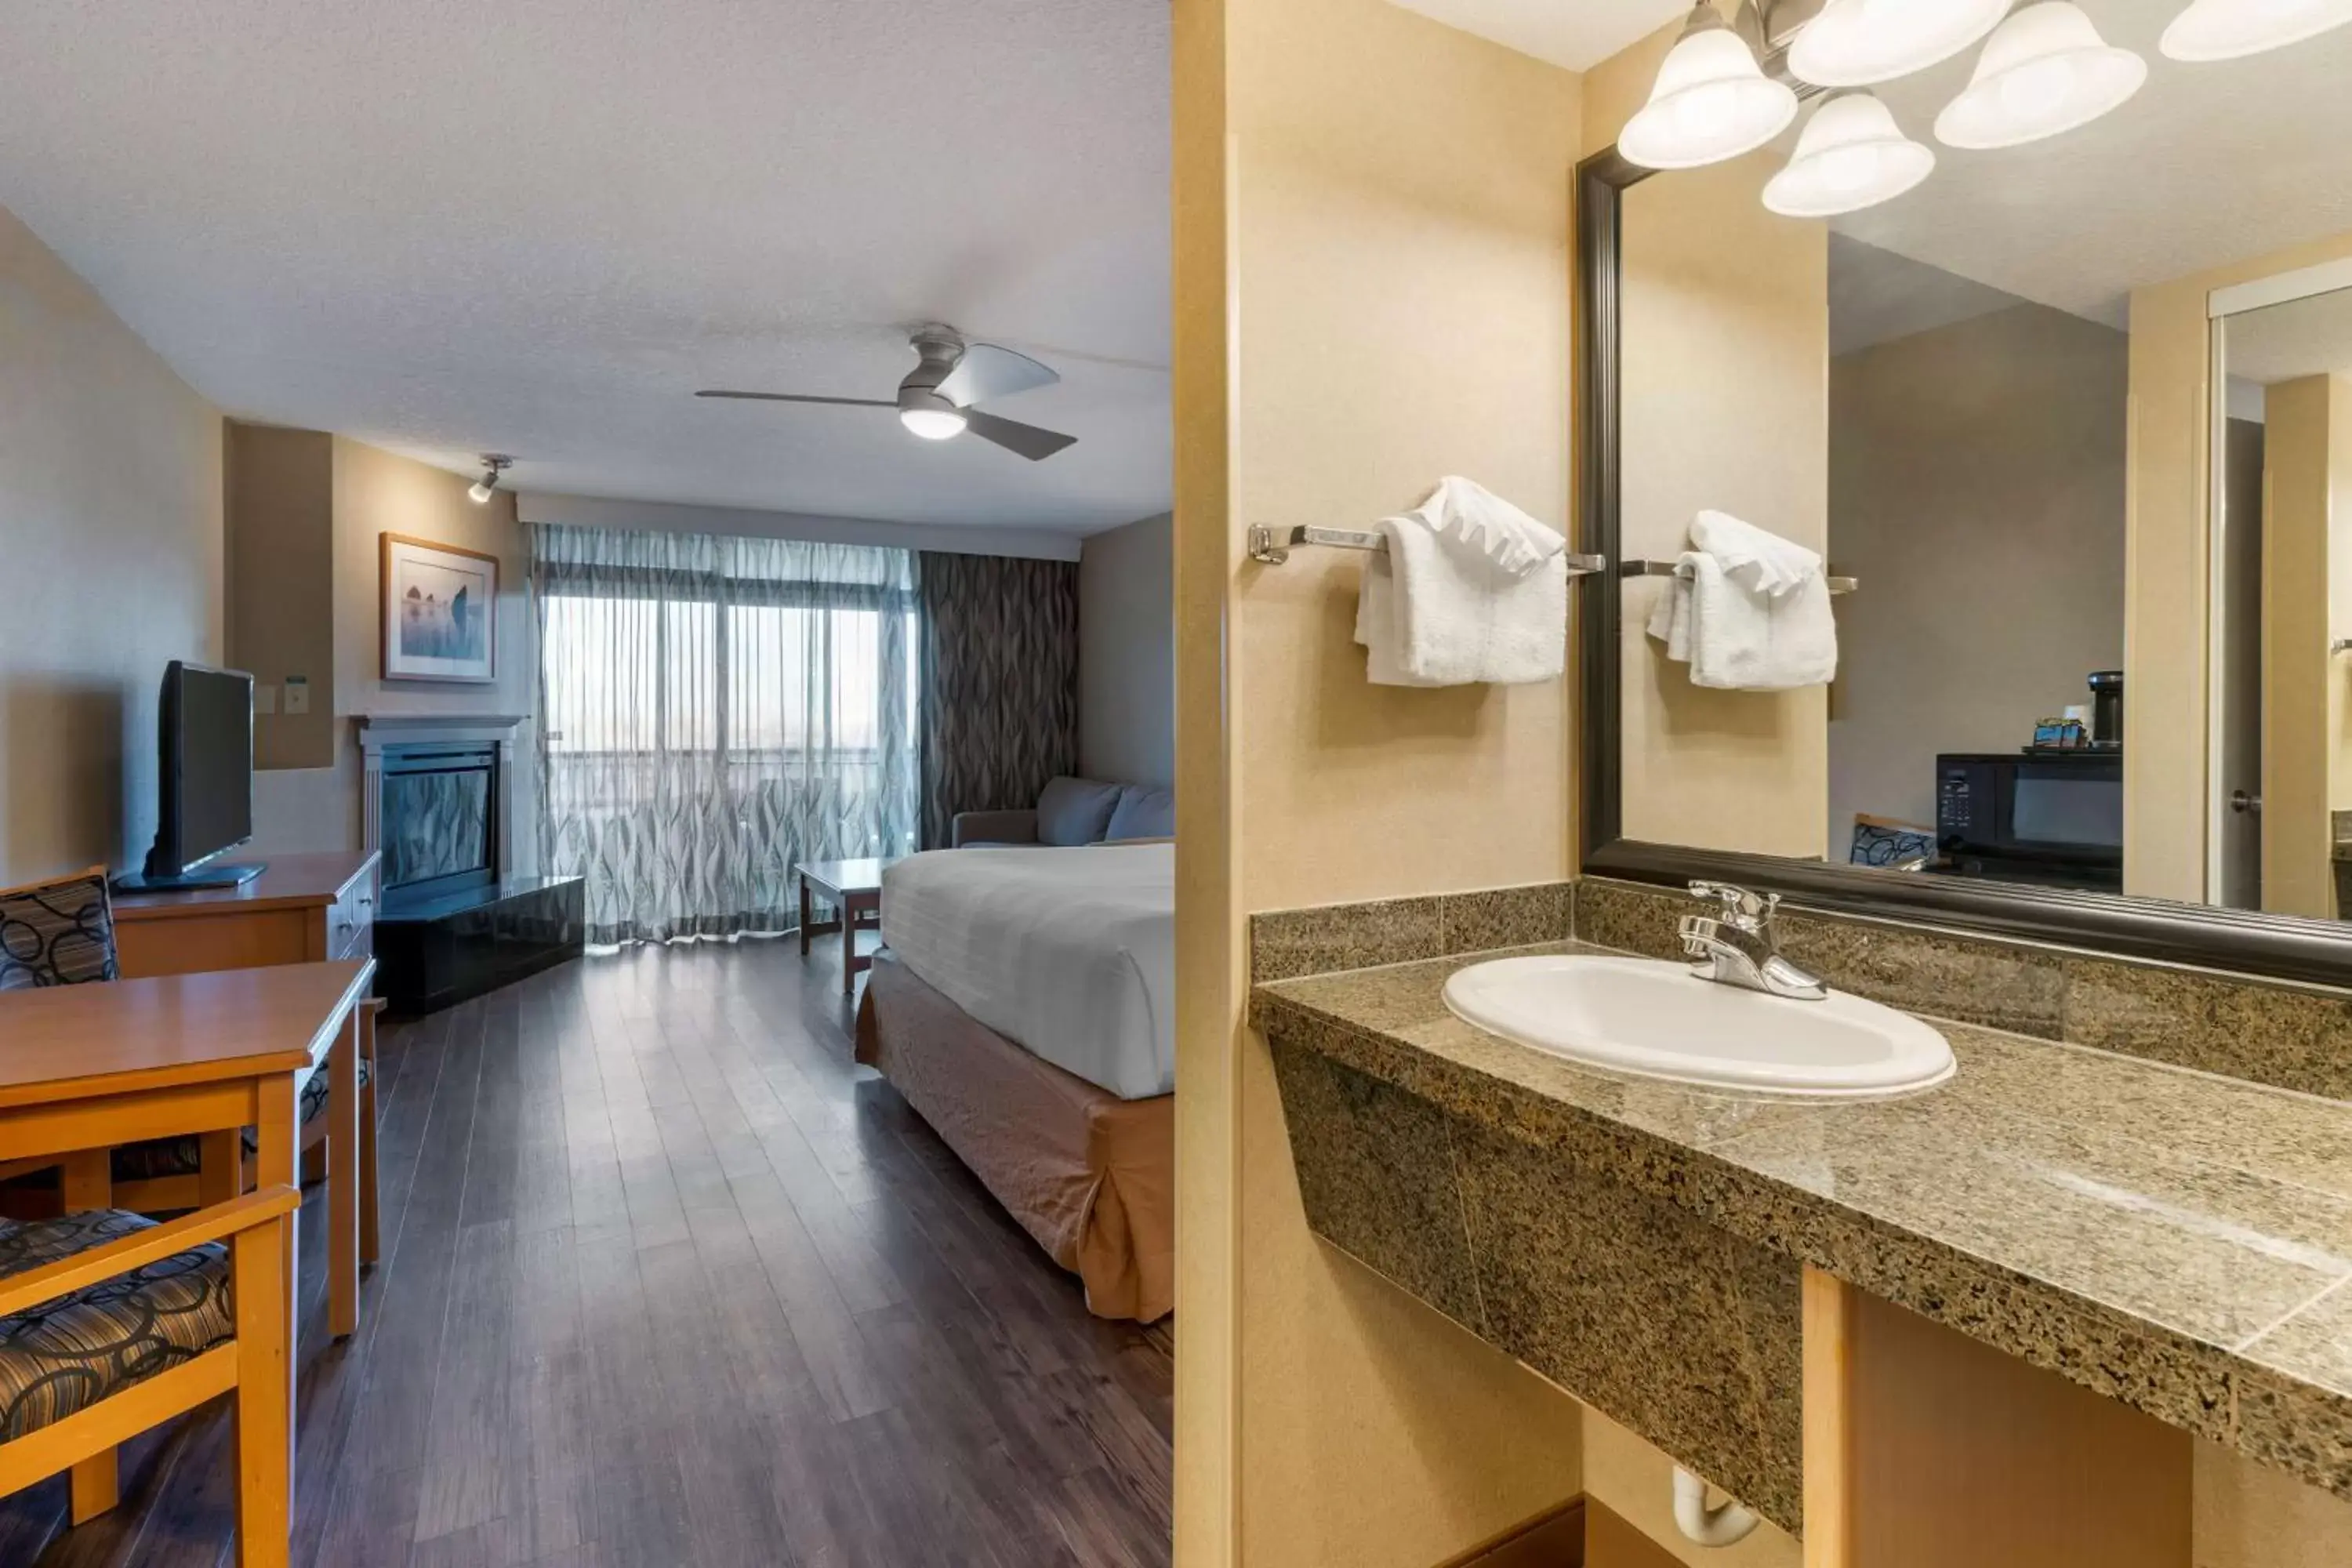 Bedroom, Bathroom in Best Western Plus Ocean View Resort